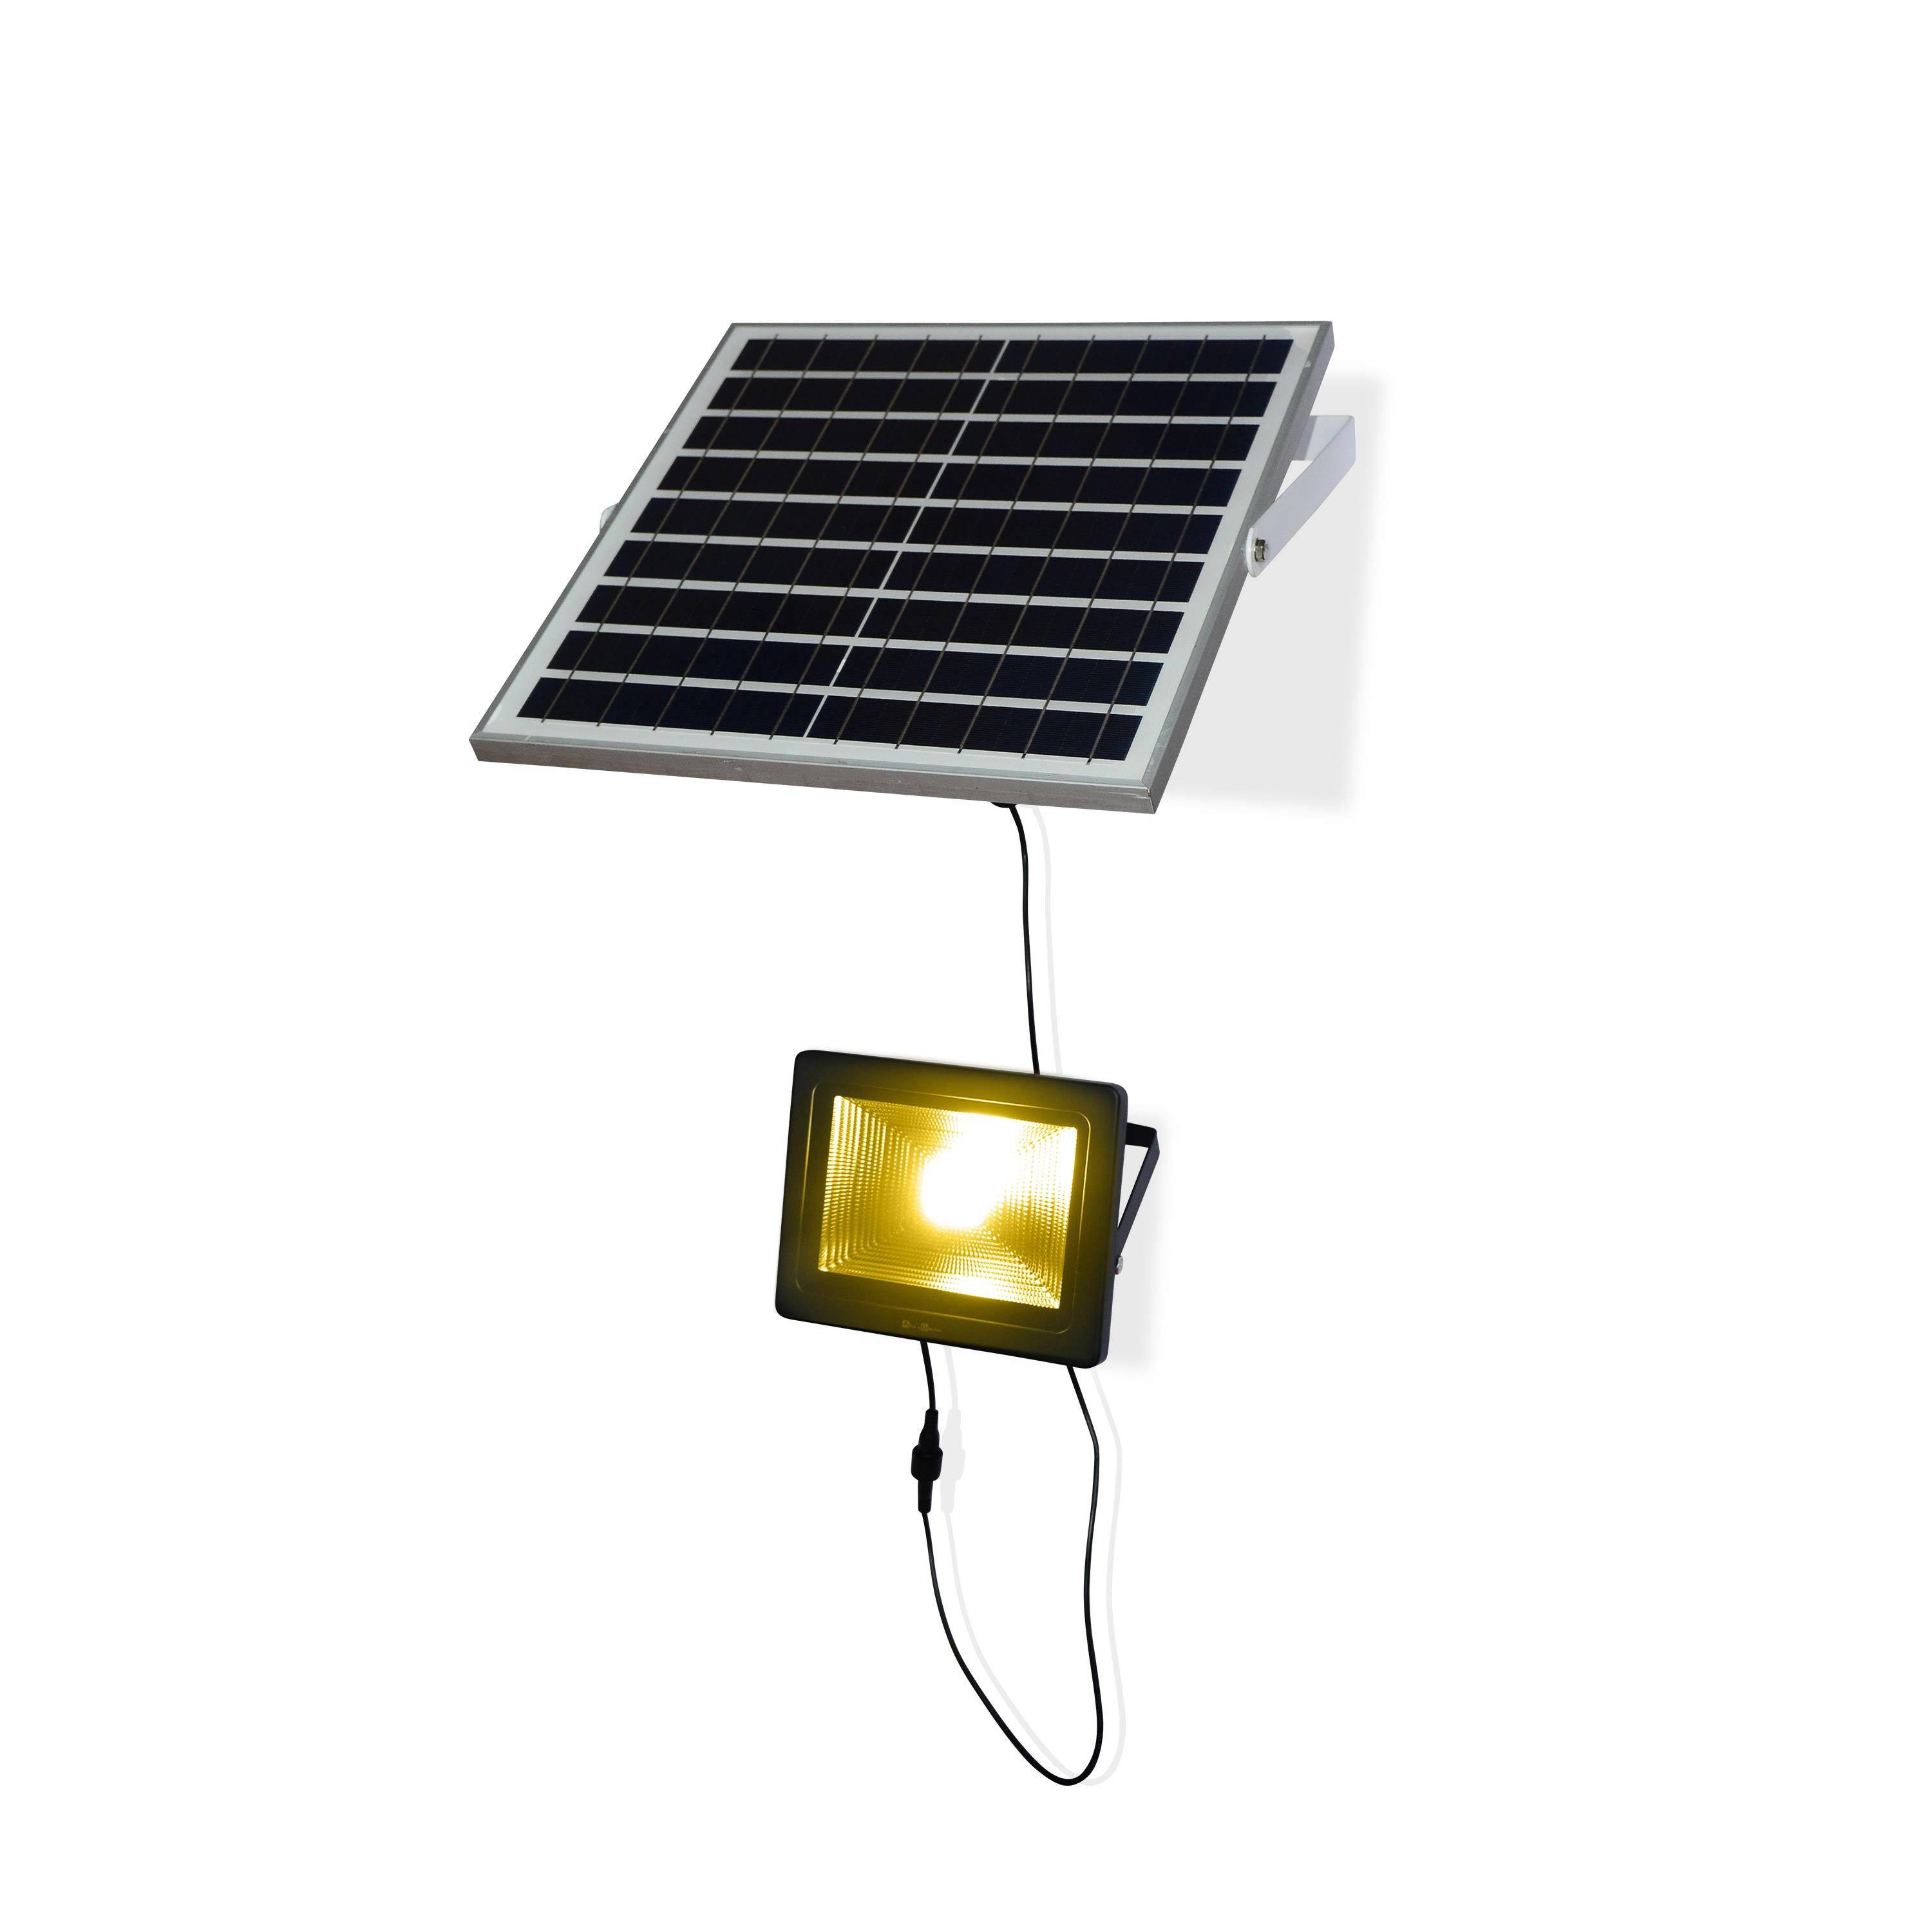 Projecteur solaire LED 20W avec panneau solaire télécommandé blanc chaud, lampe résistante à la pluie et autonome, spot extra puissant 2400 lumens équivalent 150W Photo4